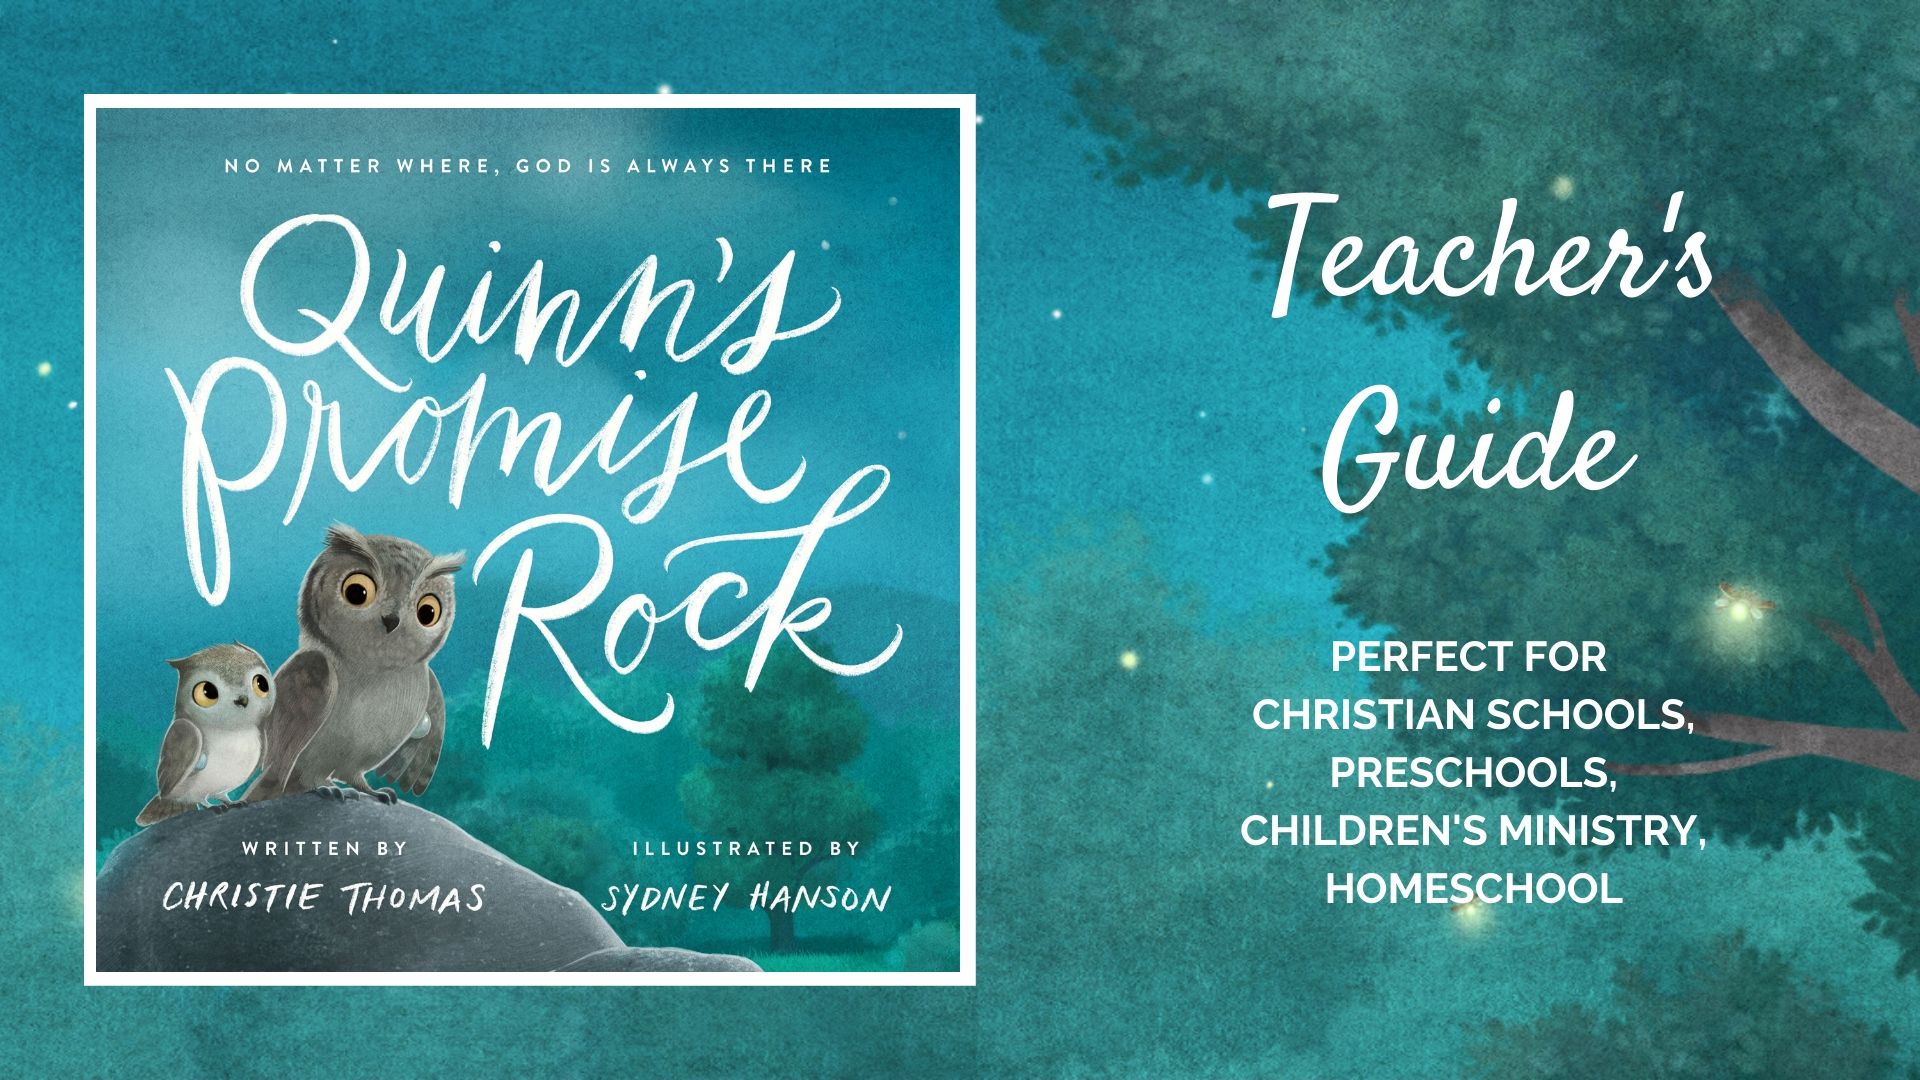 Quinn's Promise Rock teacher's guide